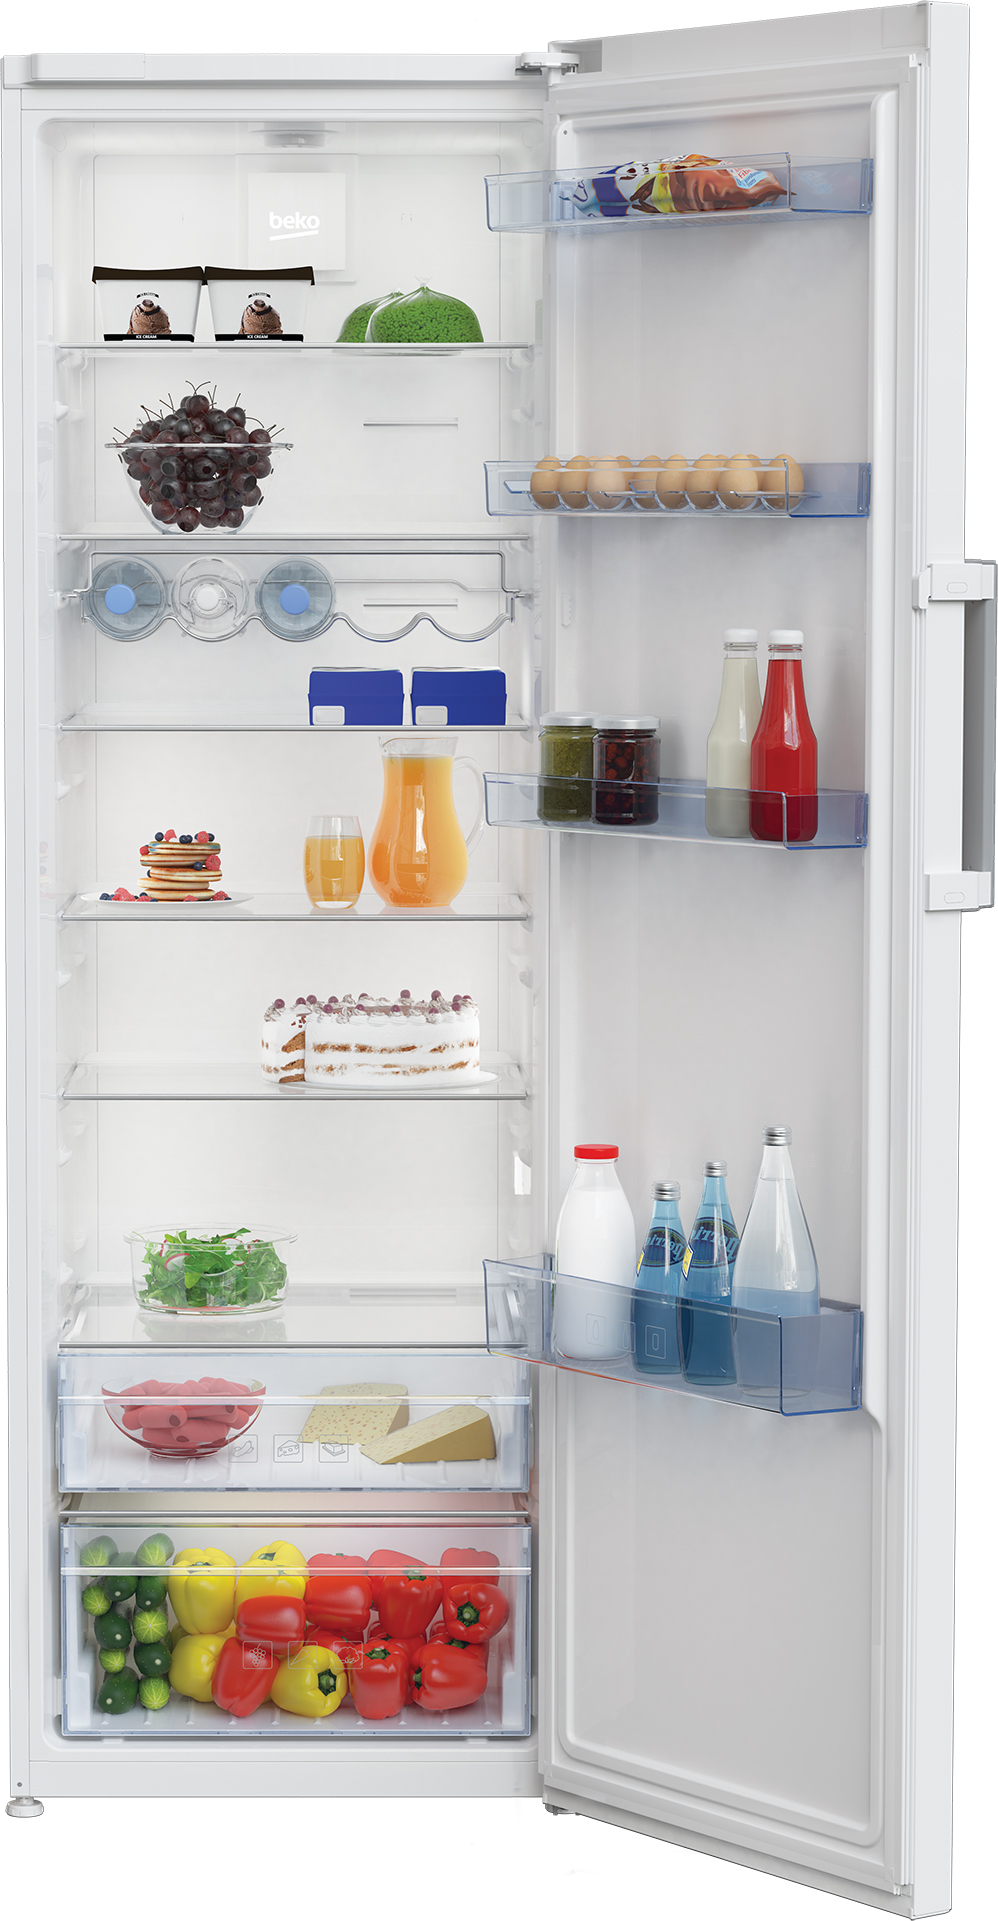 Холодильник Beko RSNE445E22 цена 26999.00 грн - фотография 2